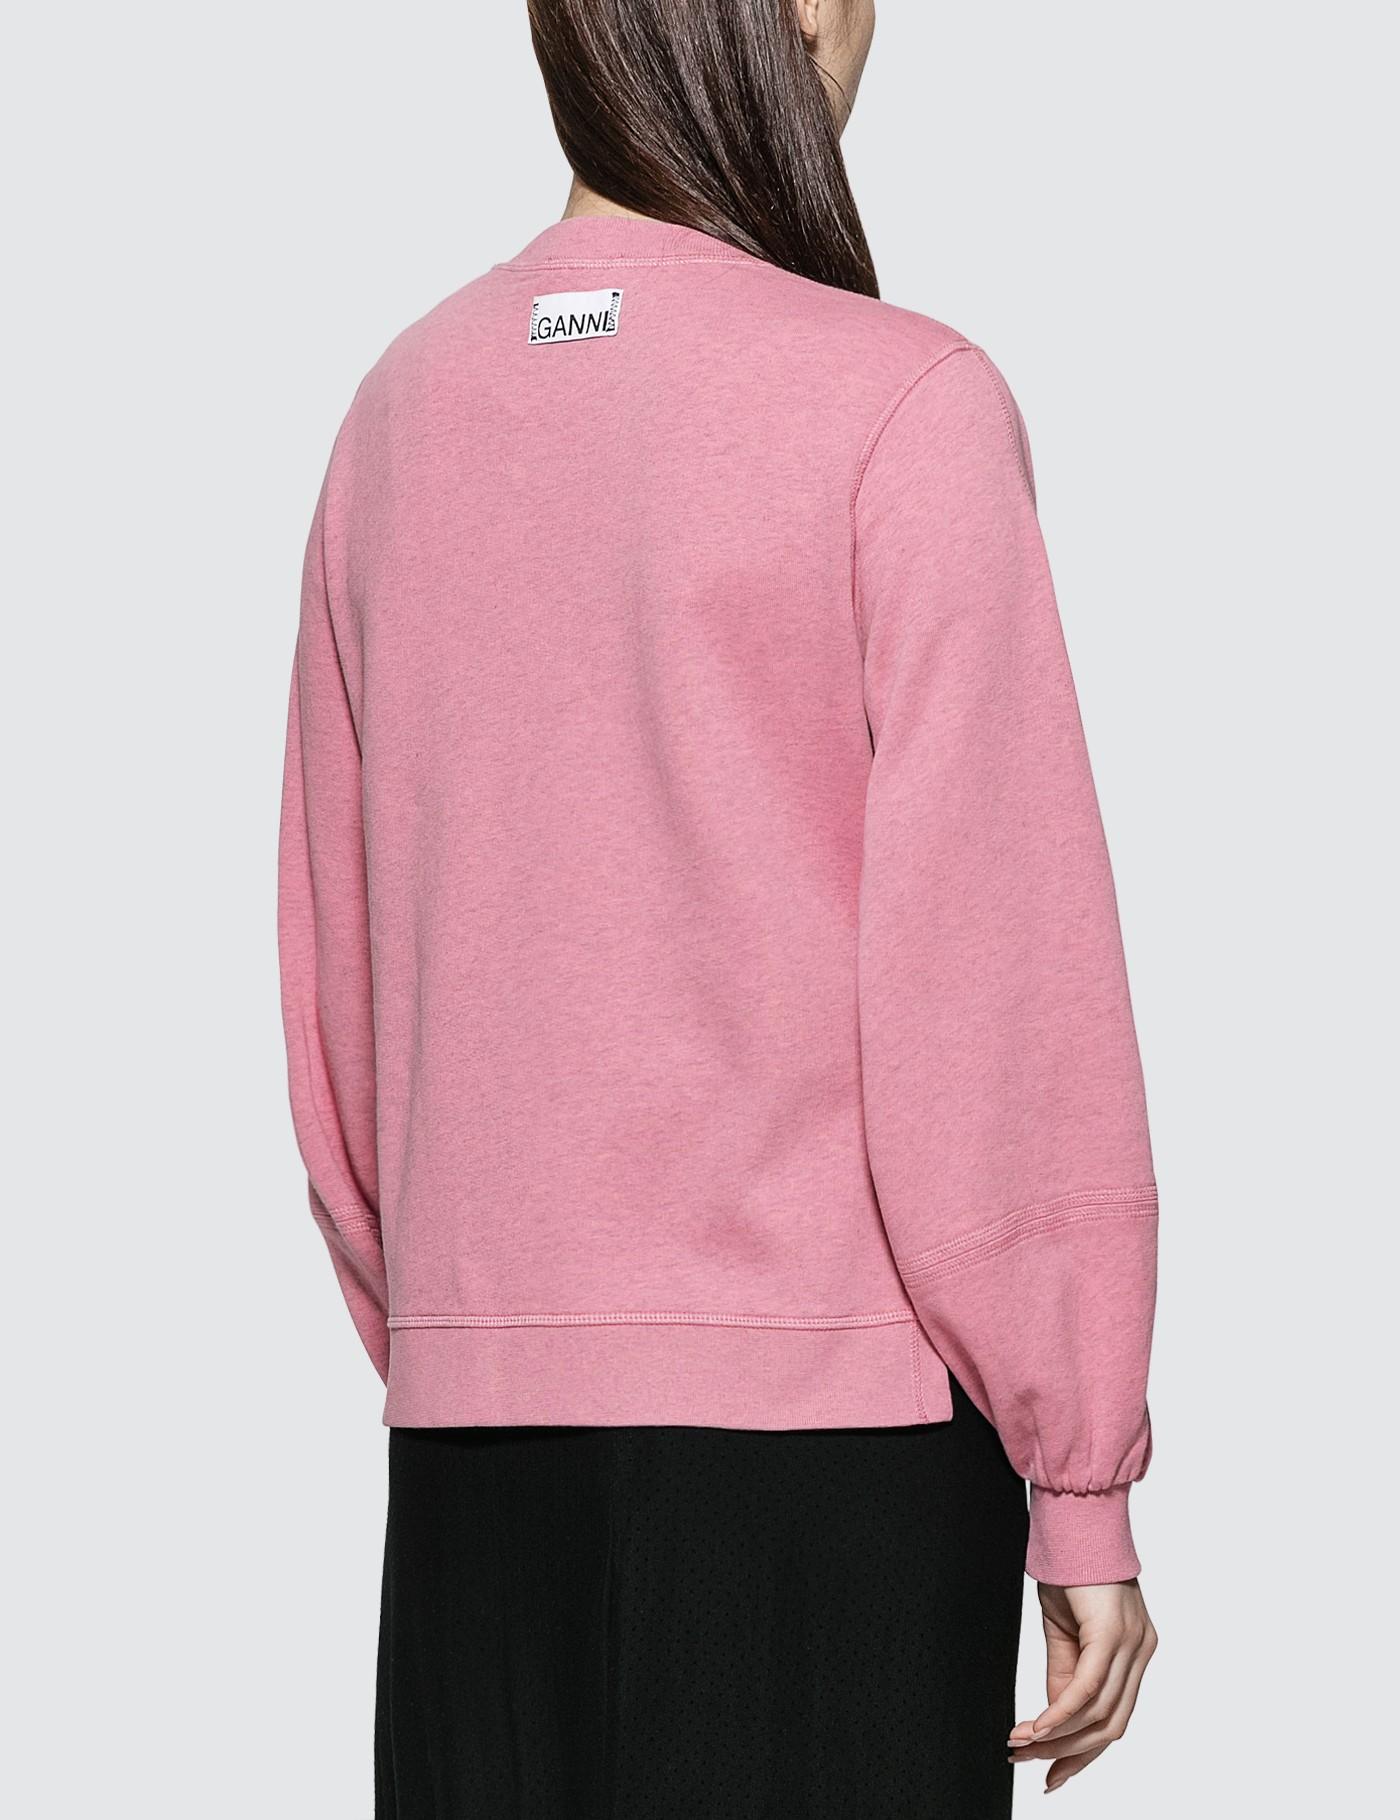 Ganni Cotton Isoli Sweatshirt in Pink - Lyst